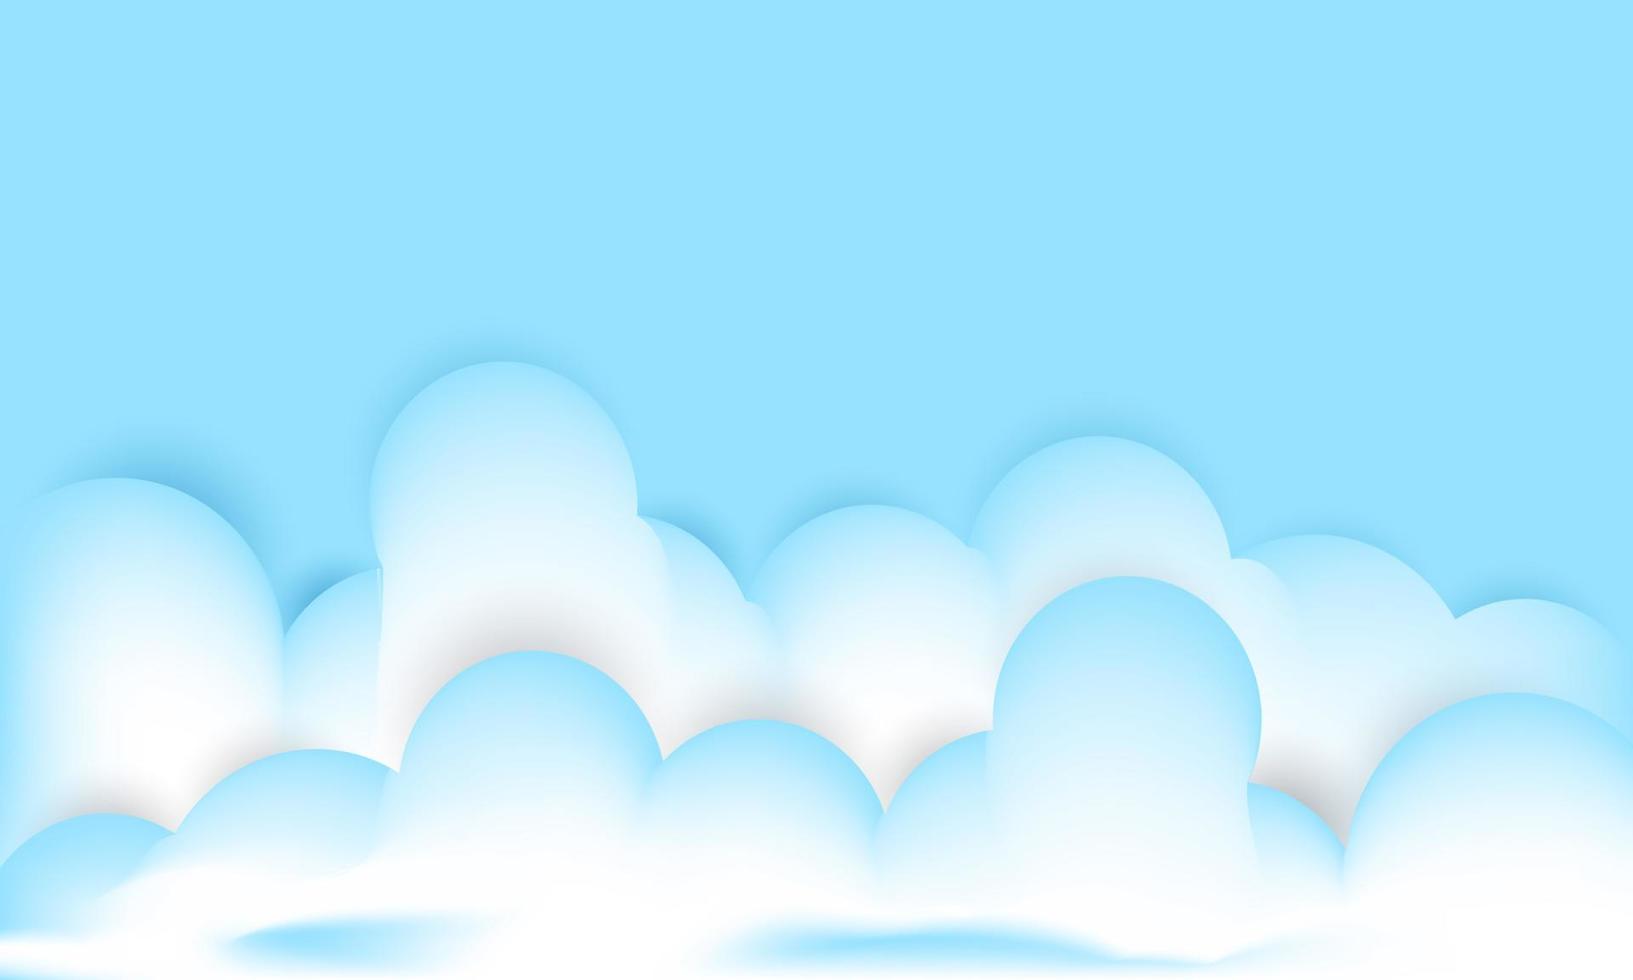 entwerfen sie kreative weiße wolken 3d lokalisiert auf blauer illustration vektor